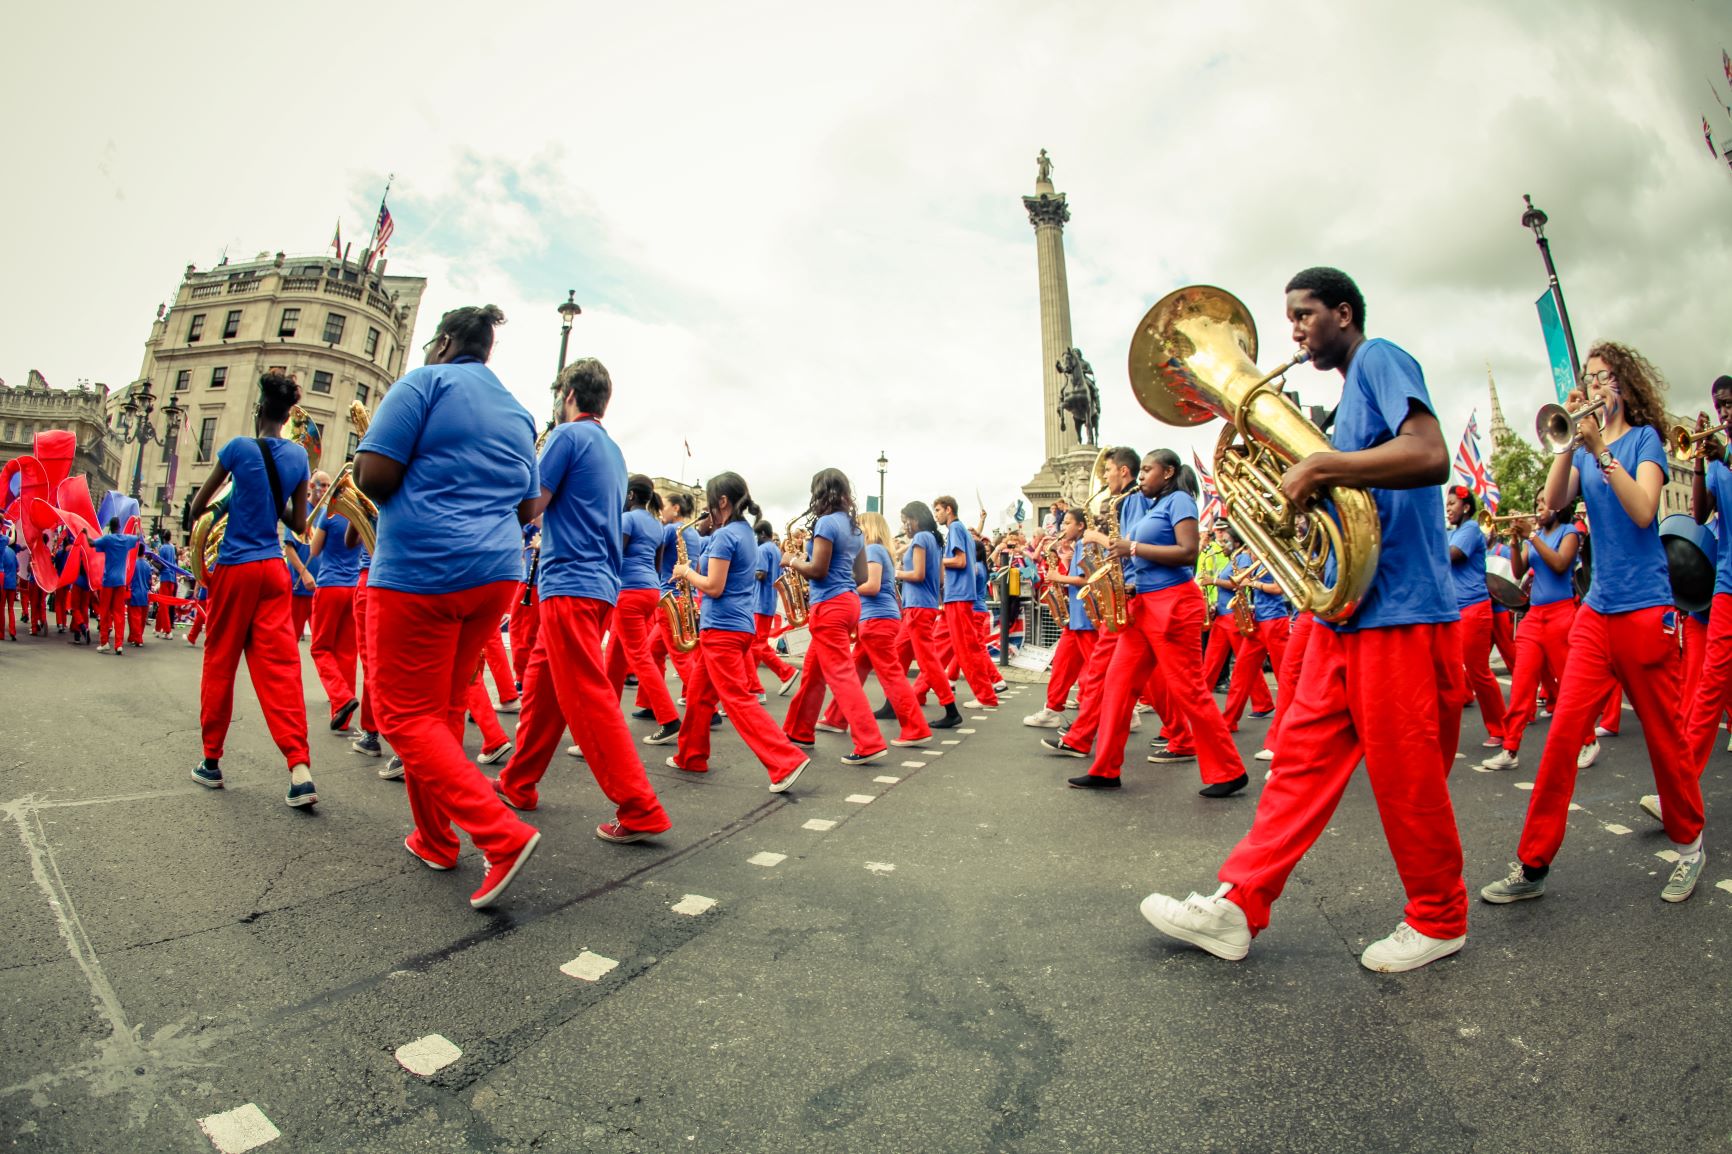 Kinetiko Bloco Band marching in a parade at Trafalgar Square